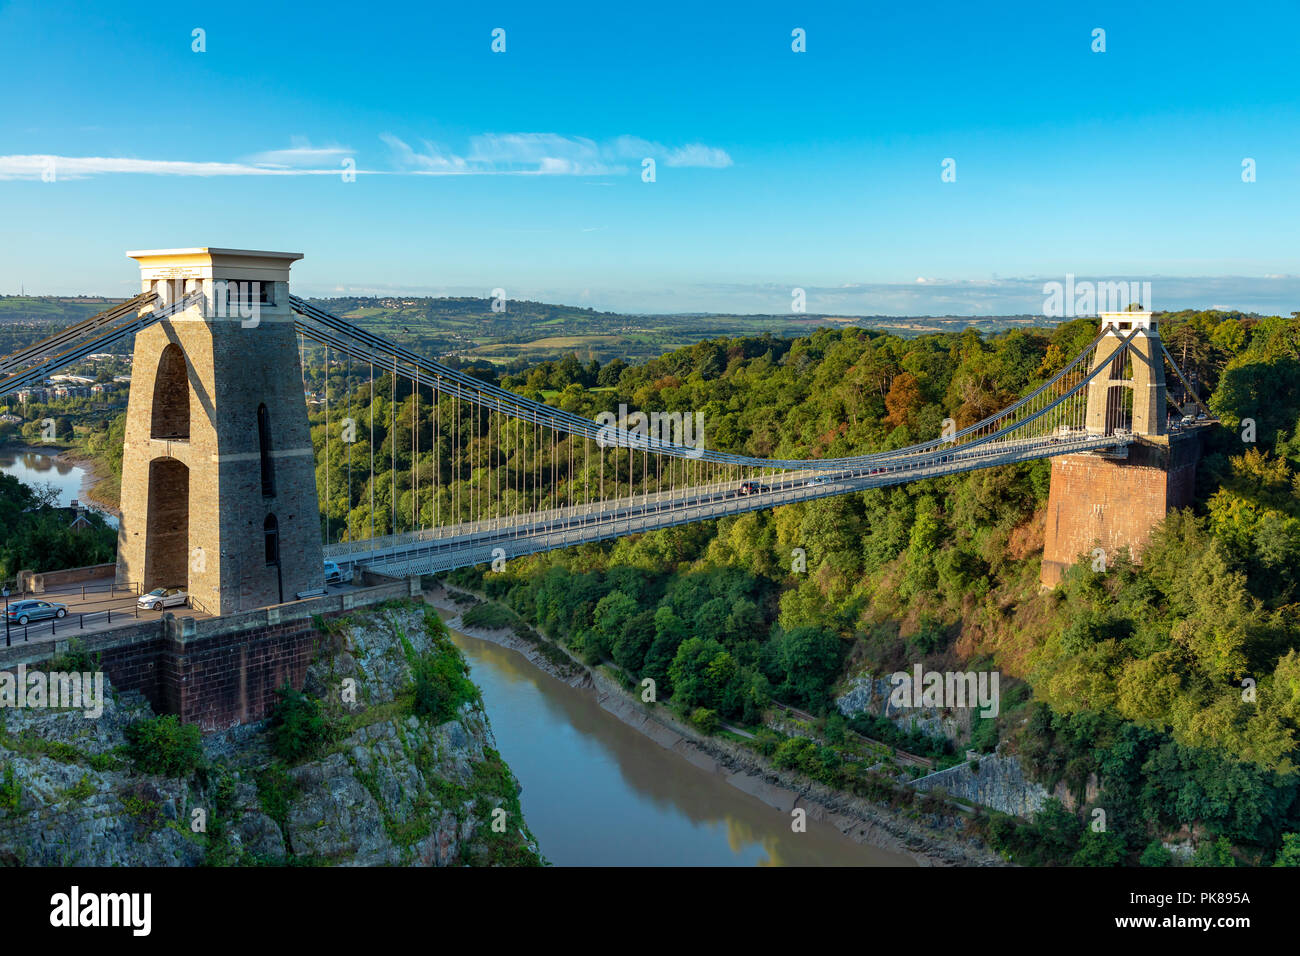 Il ponte sospeso di Clifton Bristol Inghilterra Settembre 07, 2018 il famoso ponte sospeso di Clifton, acrss the Avon Gorge, progettato da Isambard Ki Foto Stock